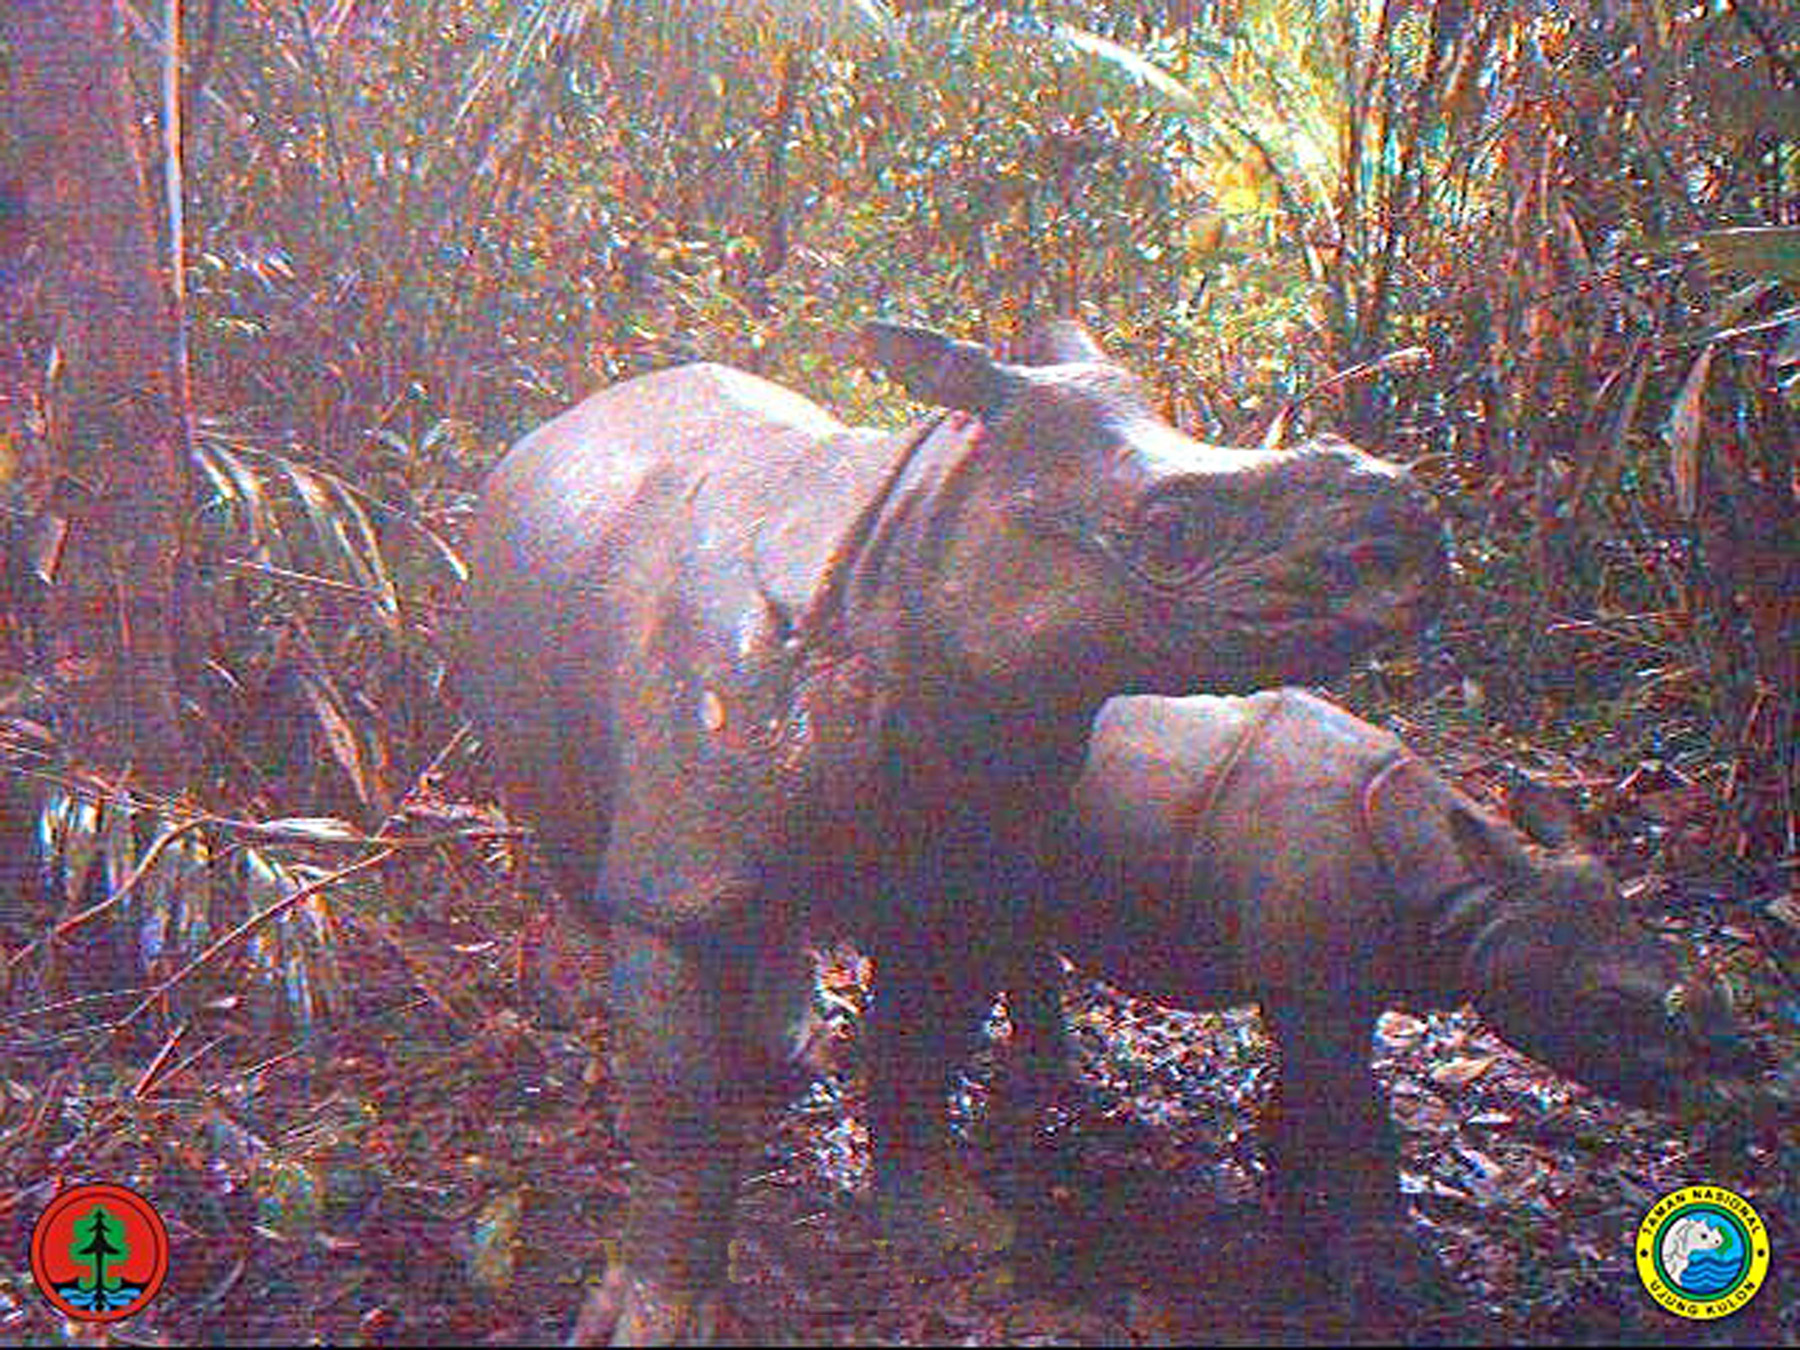 javan rhinoceros population 2014